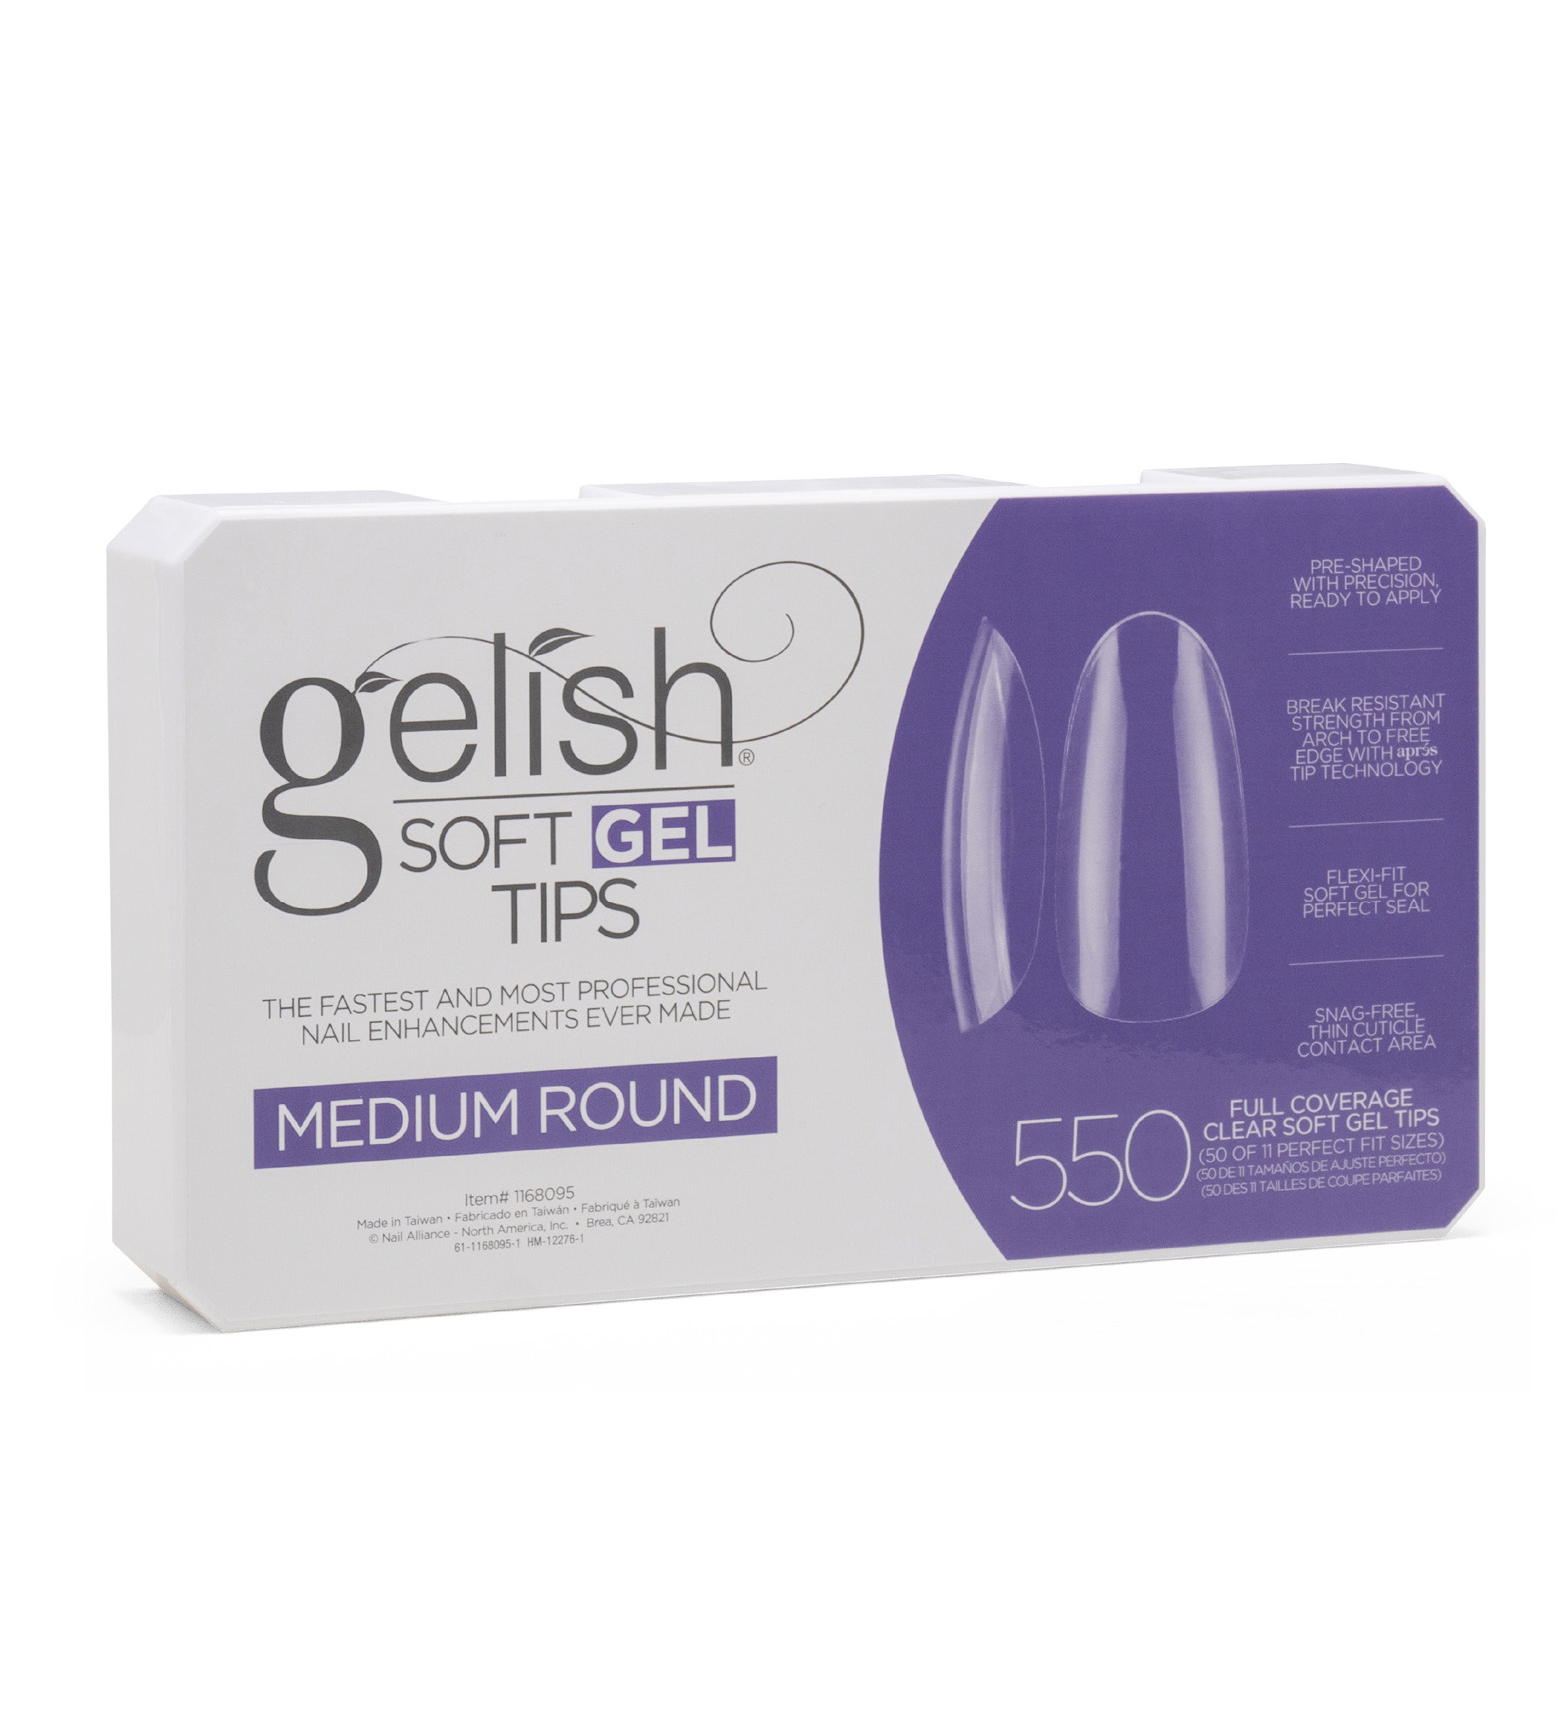 Embouts MEDIUM ROUND Gelish® Soft Gel.